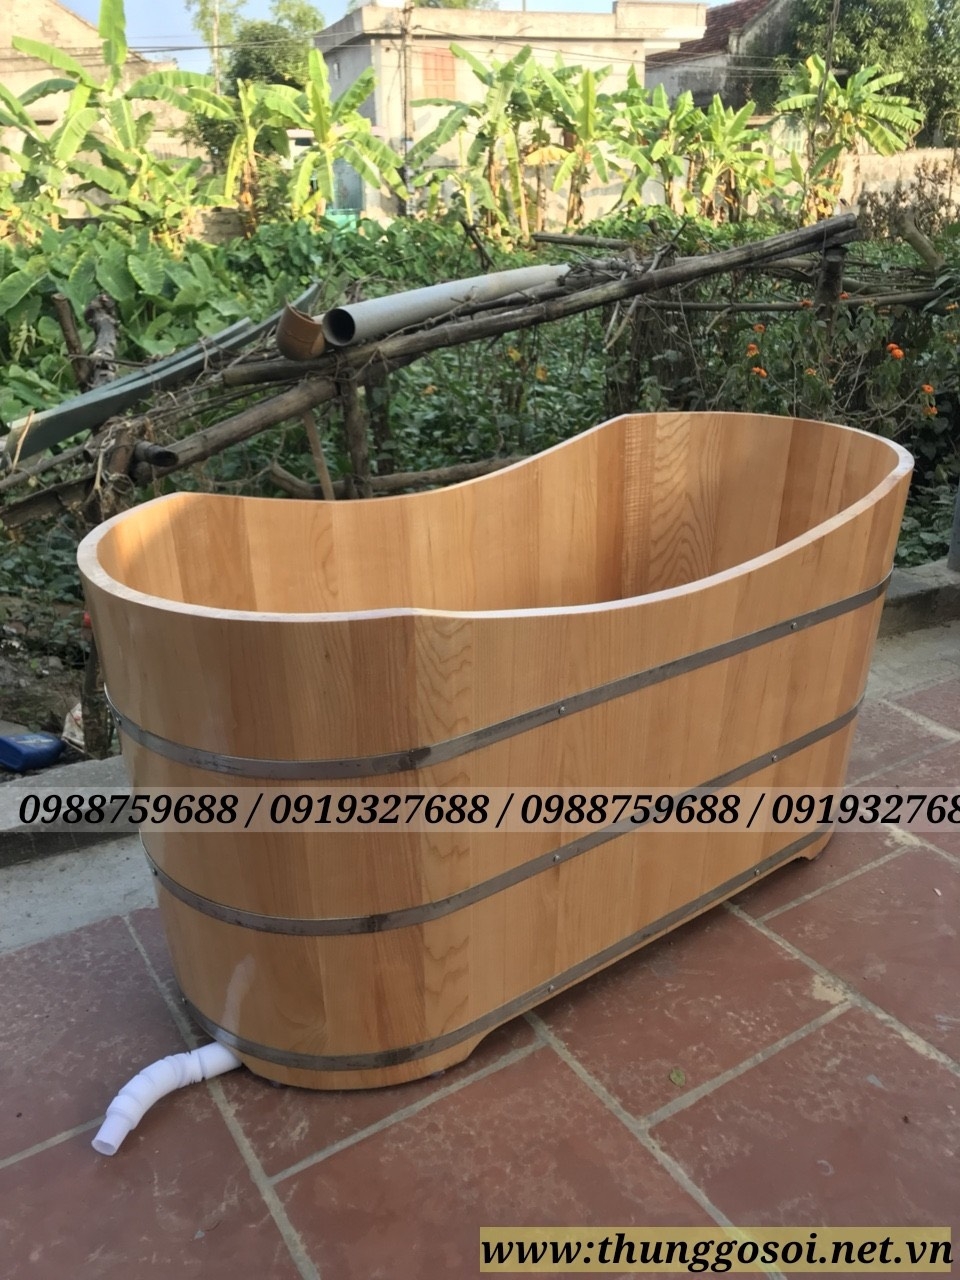 bán thùng tắm gỗ sồi giá rẻ